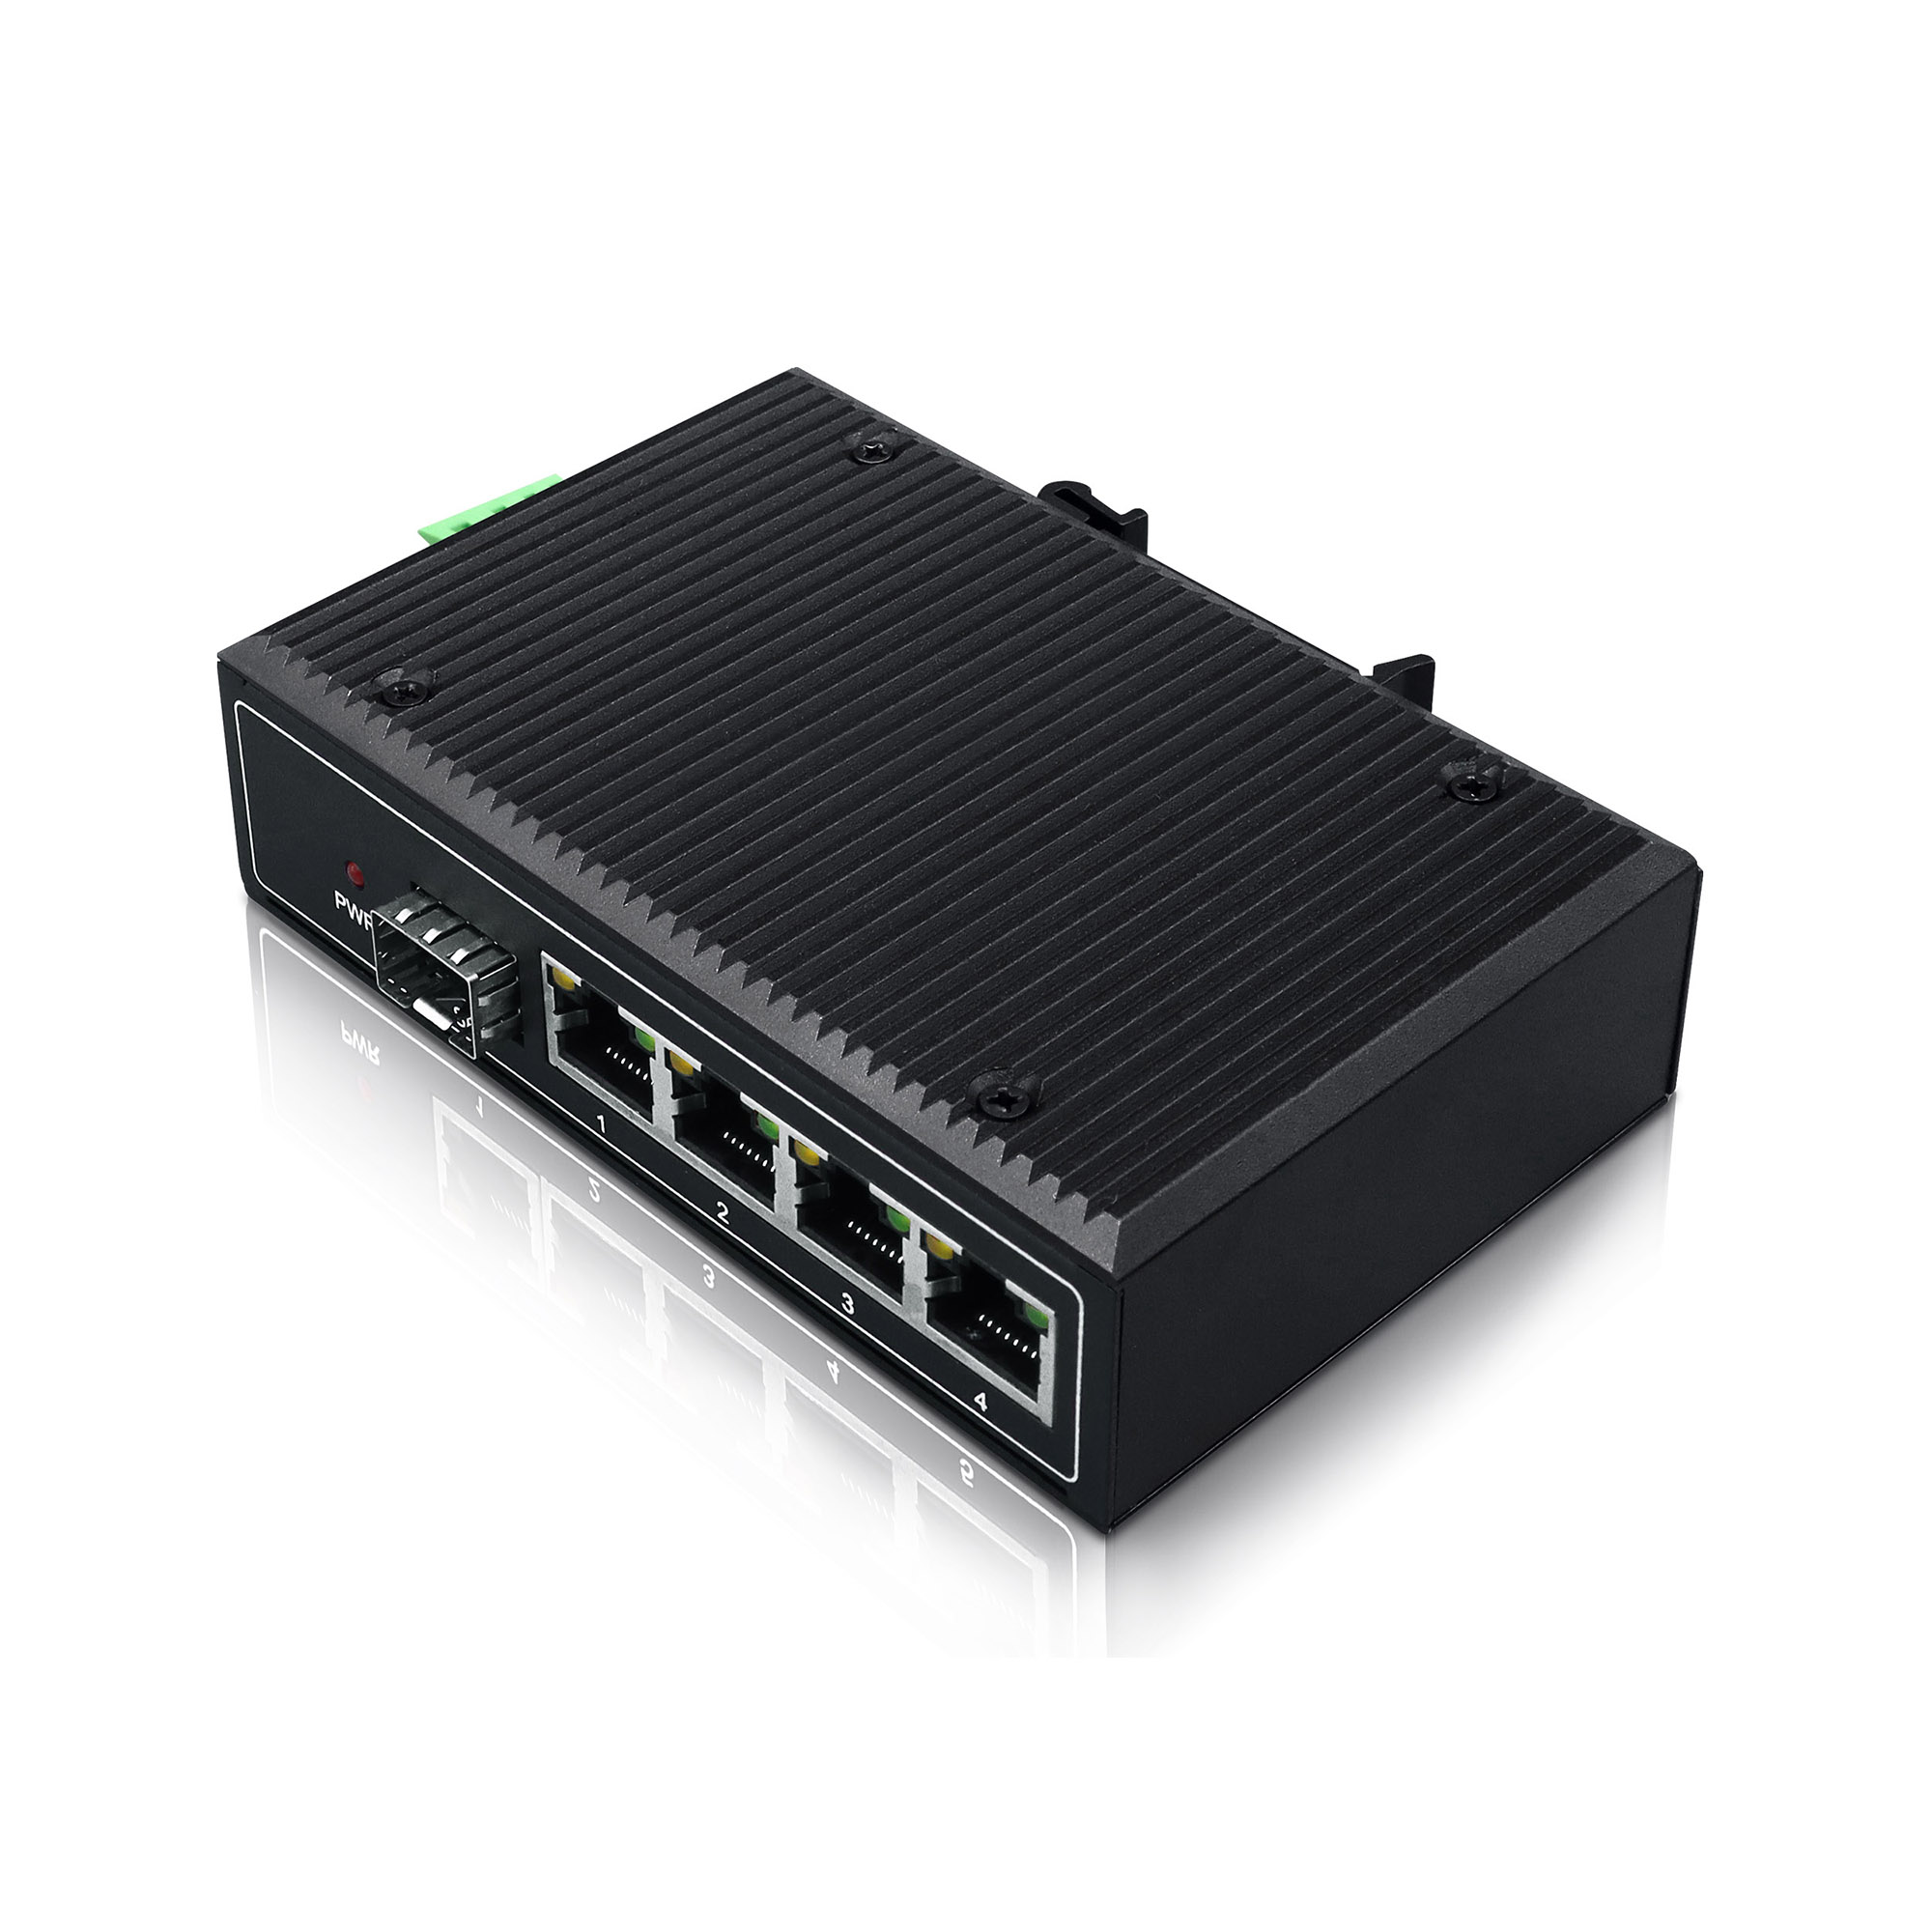 YN-SG105S Industrial Ethernet Switch